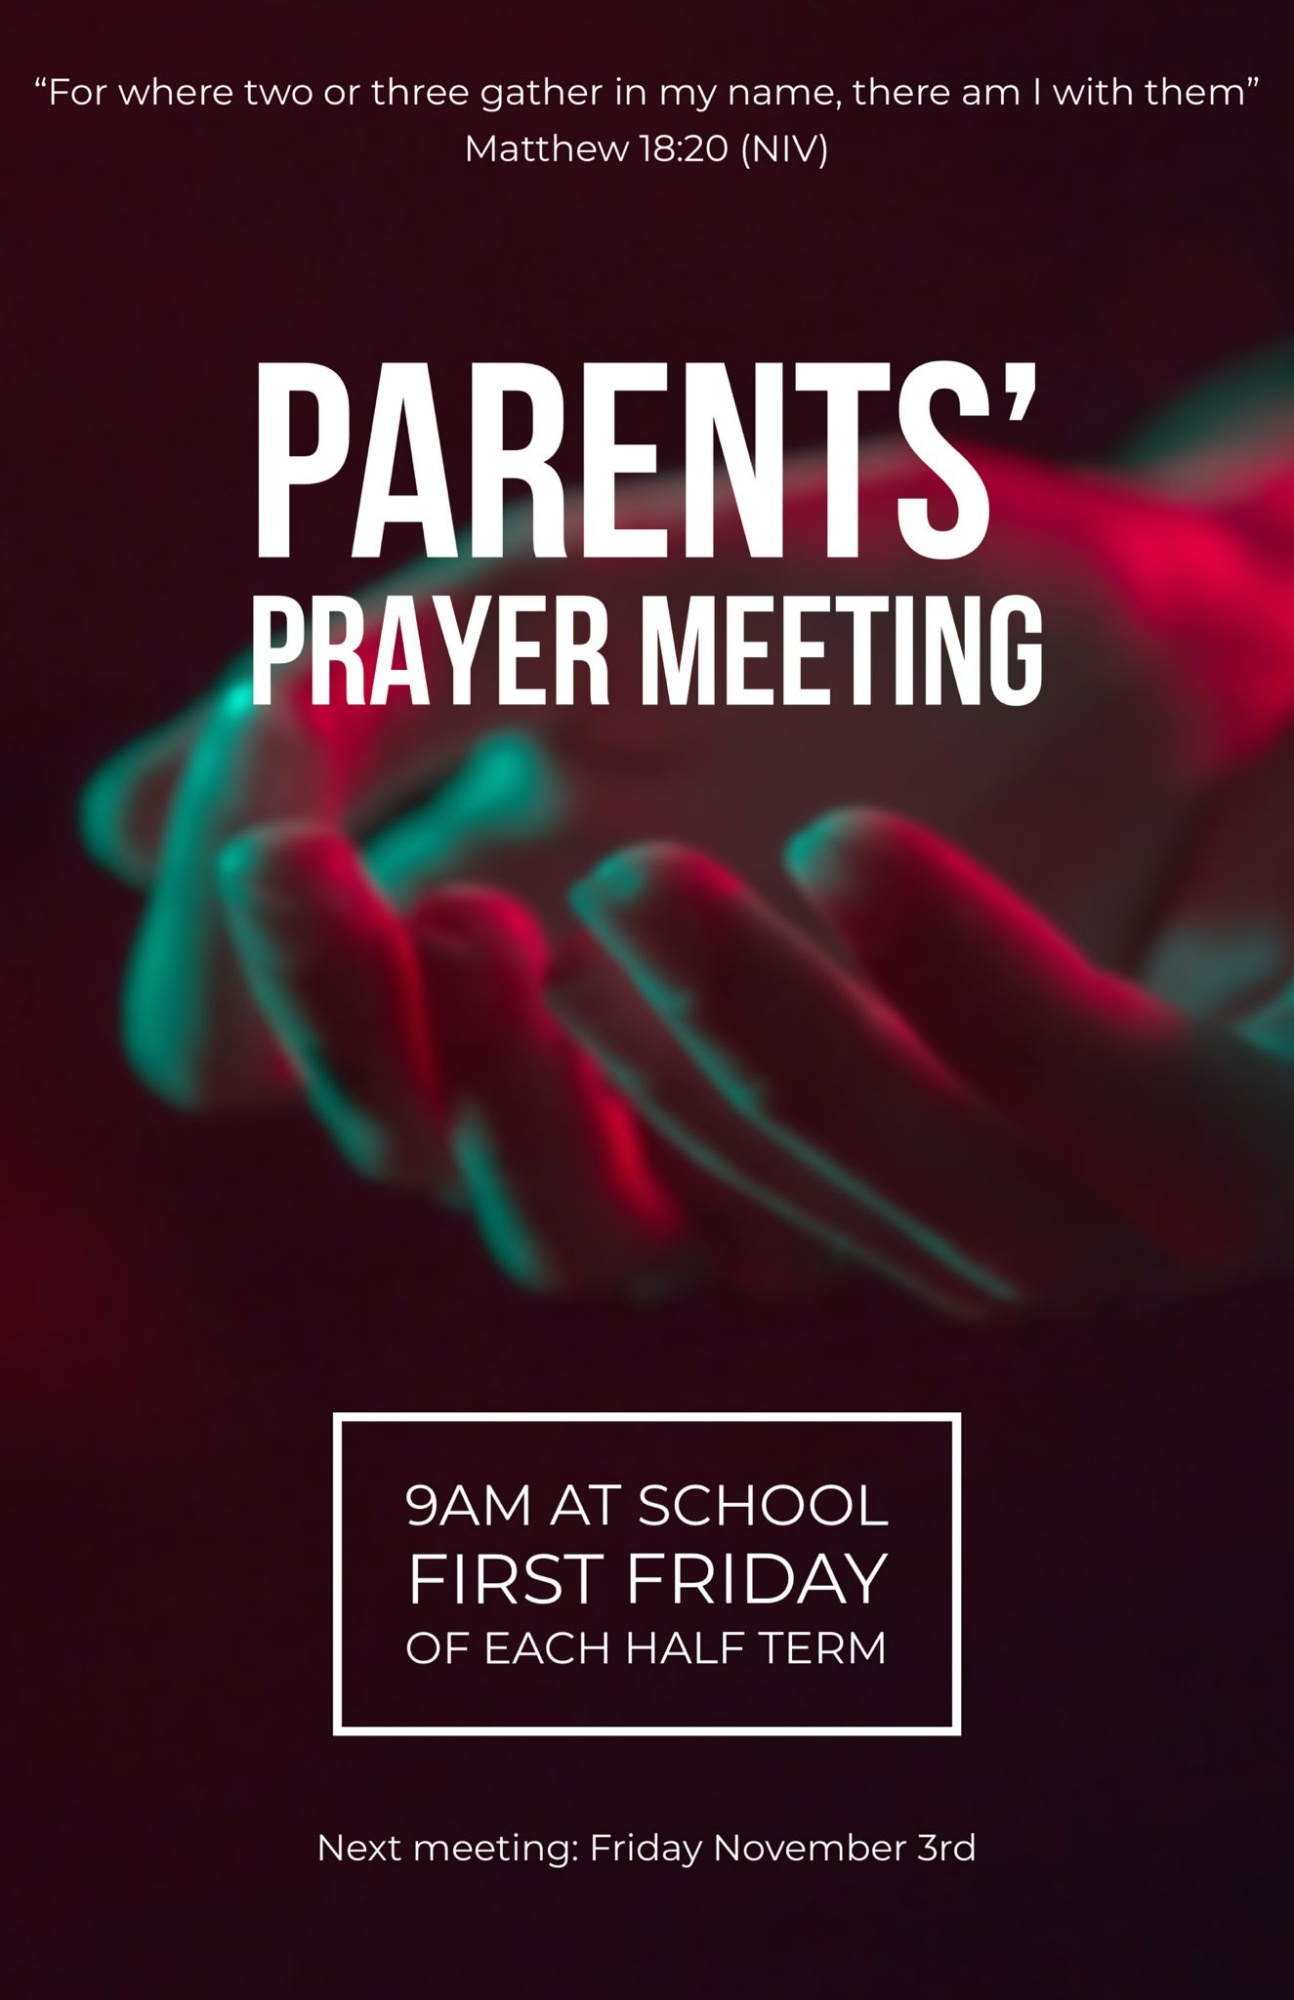 Parents' Prayer Meeting Poster